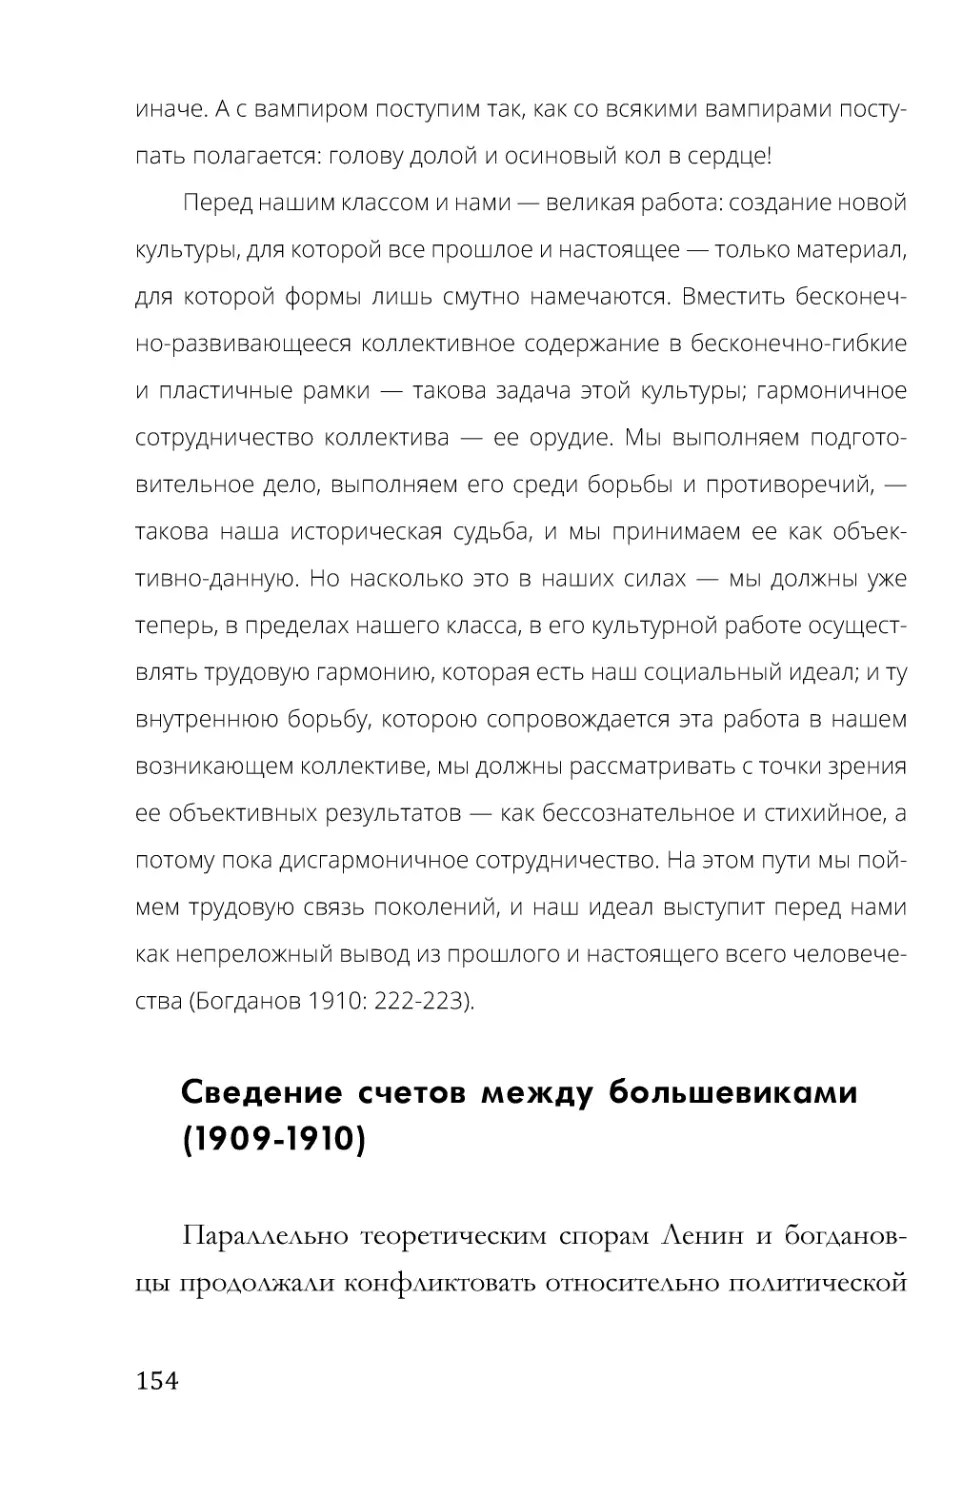 Сведение счетов между большевиками (1909-1910)